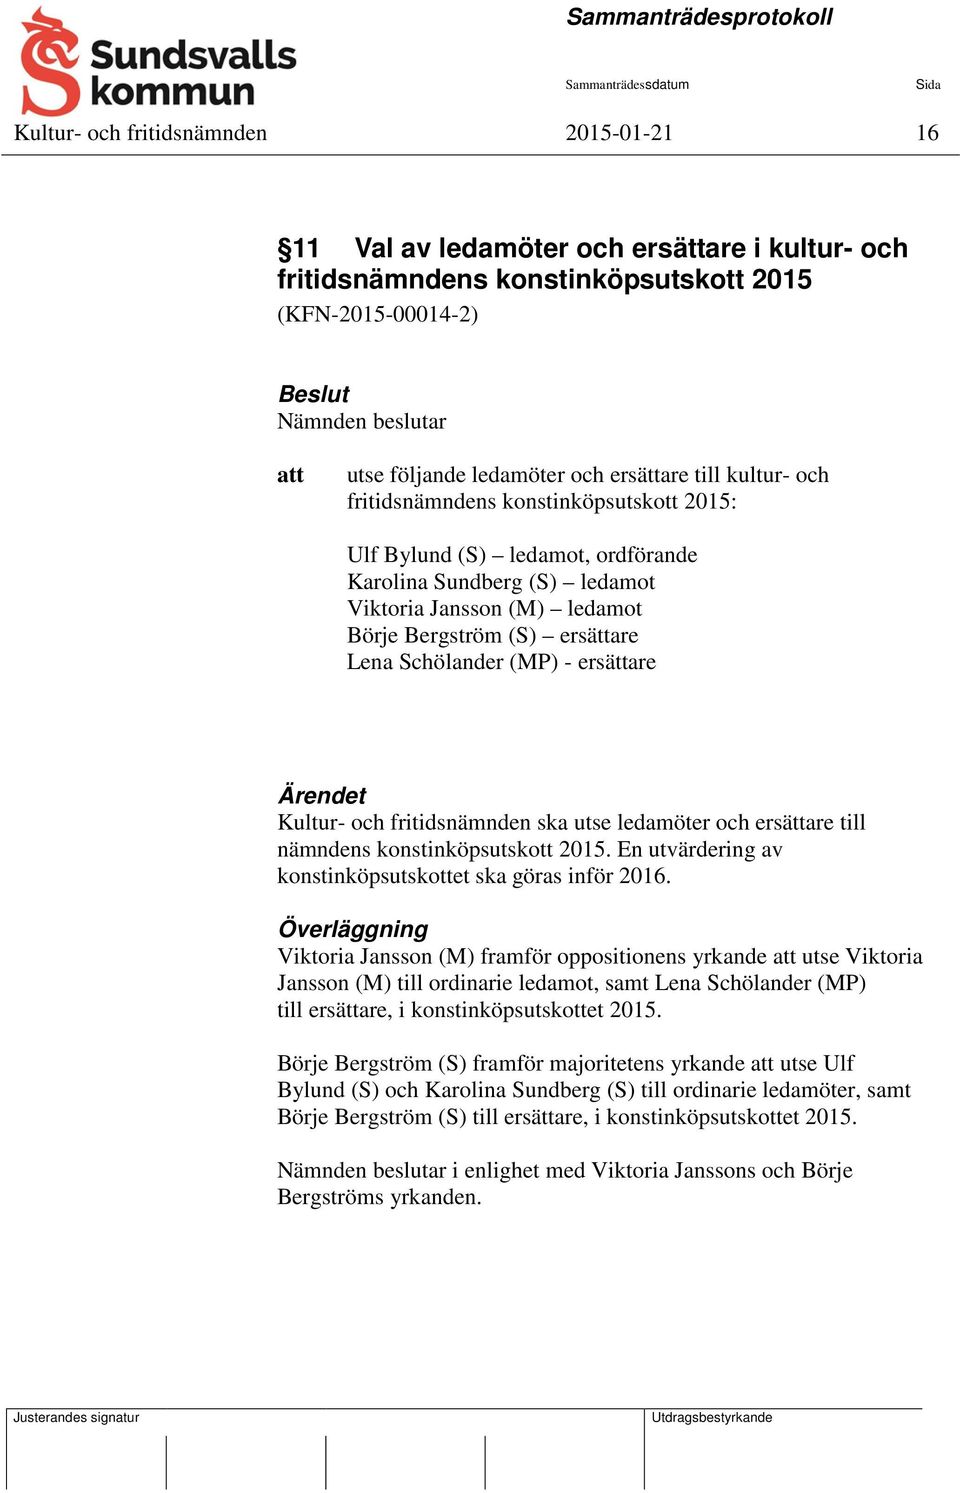 Schölander (MP) - ersättare Ärendet Kultur- och fritidsnämnden ska utse ledamöter och ersättare till nämndens konstinköpsutskott 2015. En utvärdering av konstinköpsutskottet ska göras inför 2016.